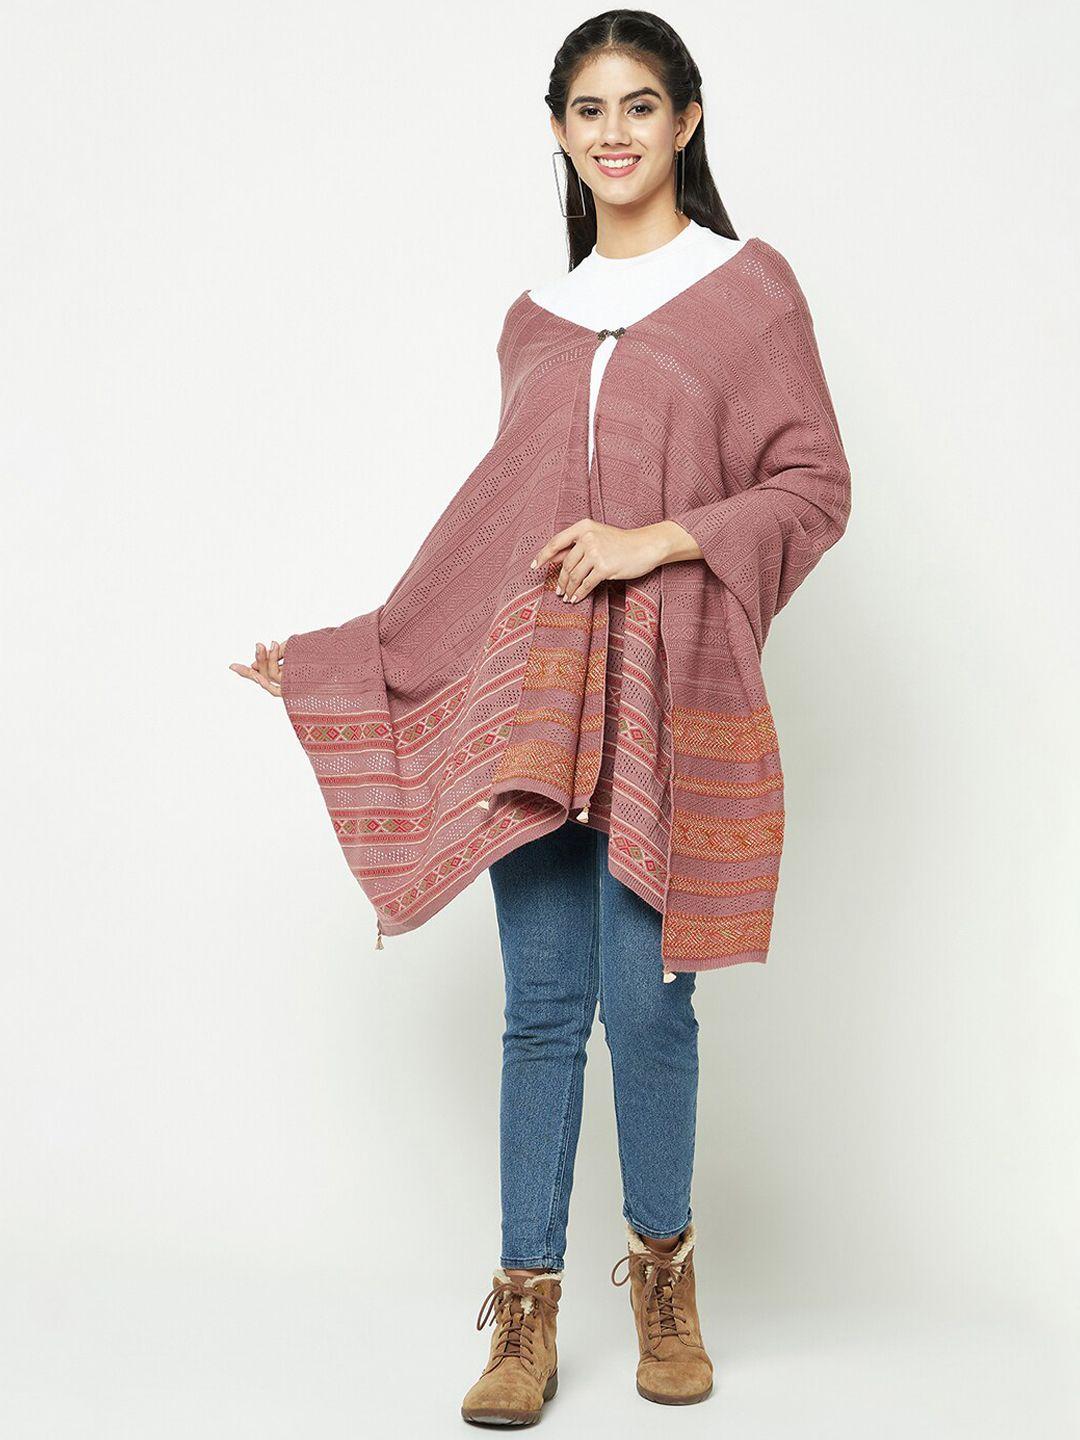 knitstudio woven-designed shrug